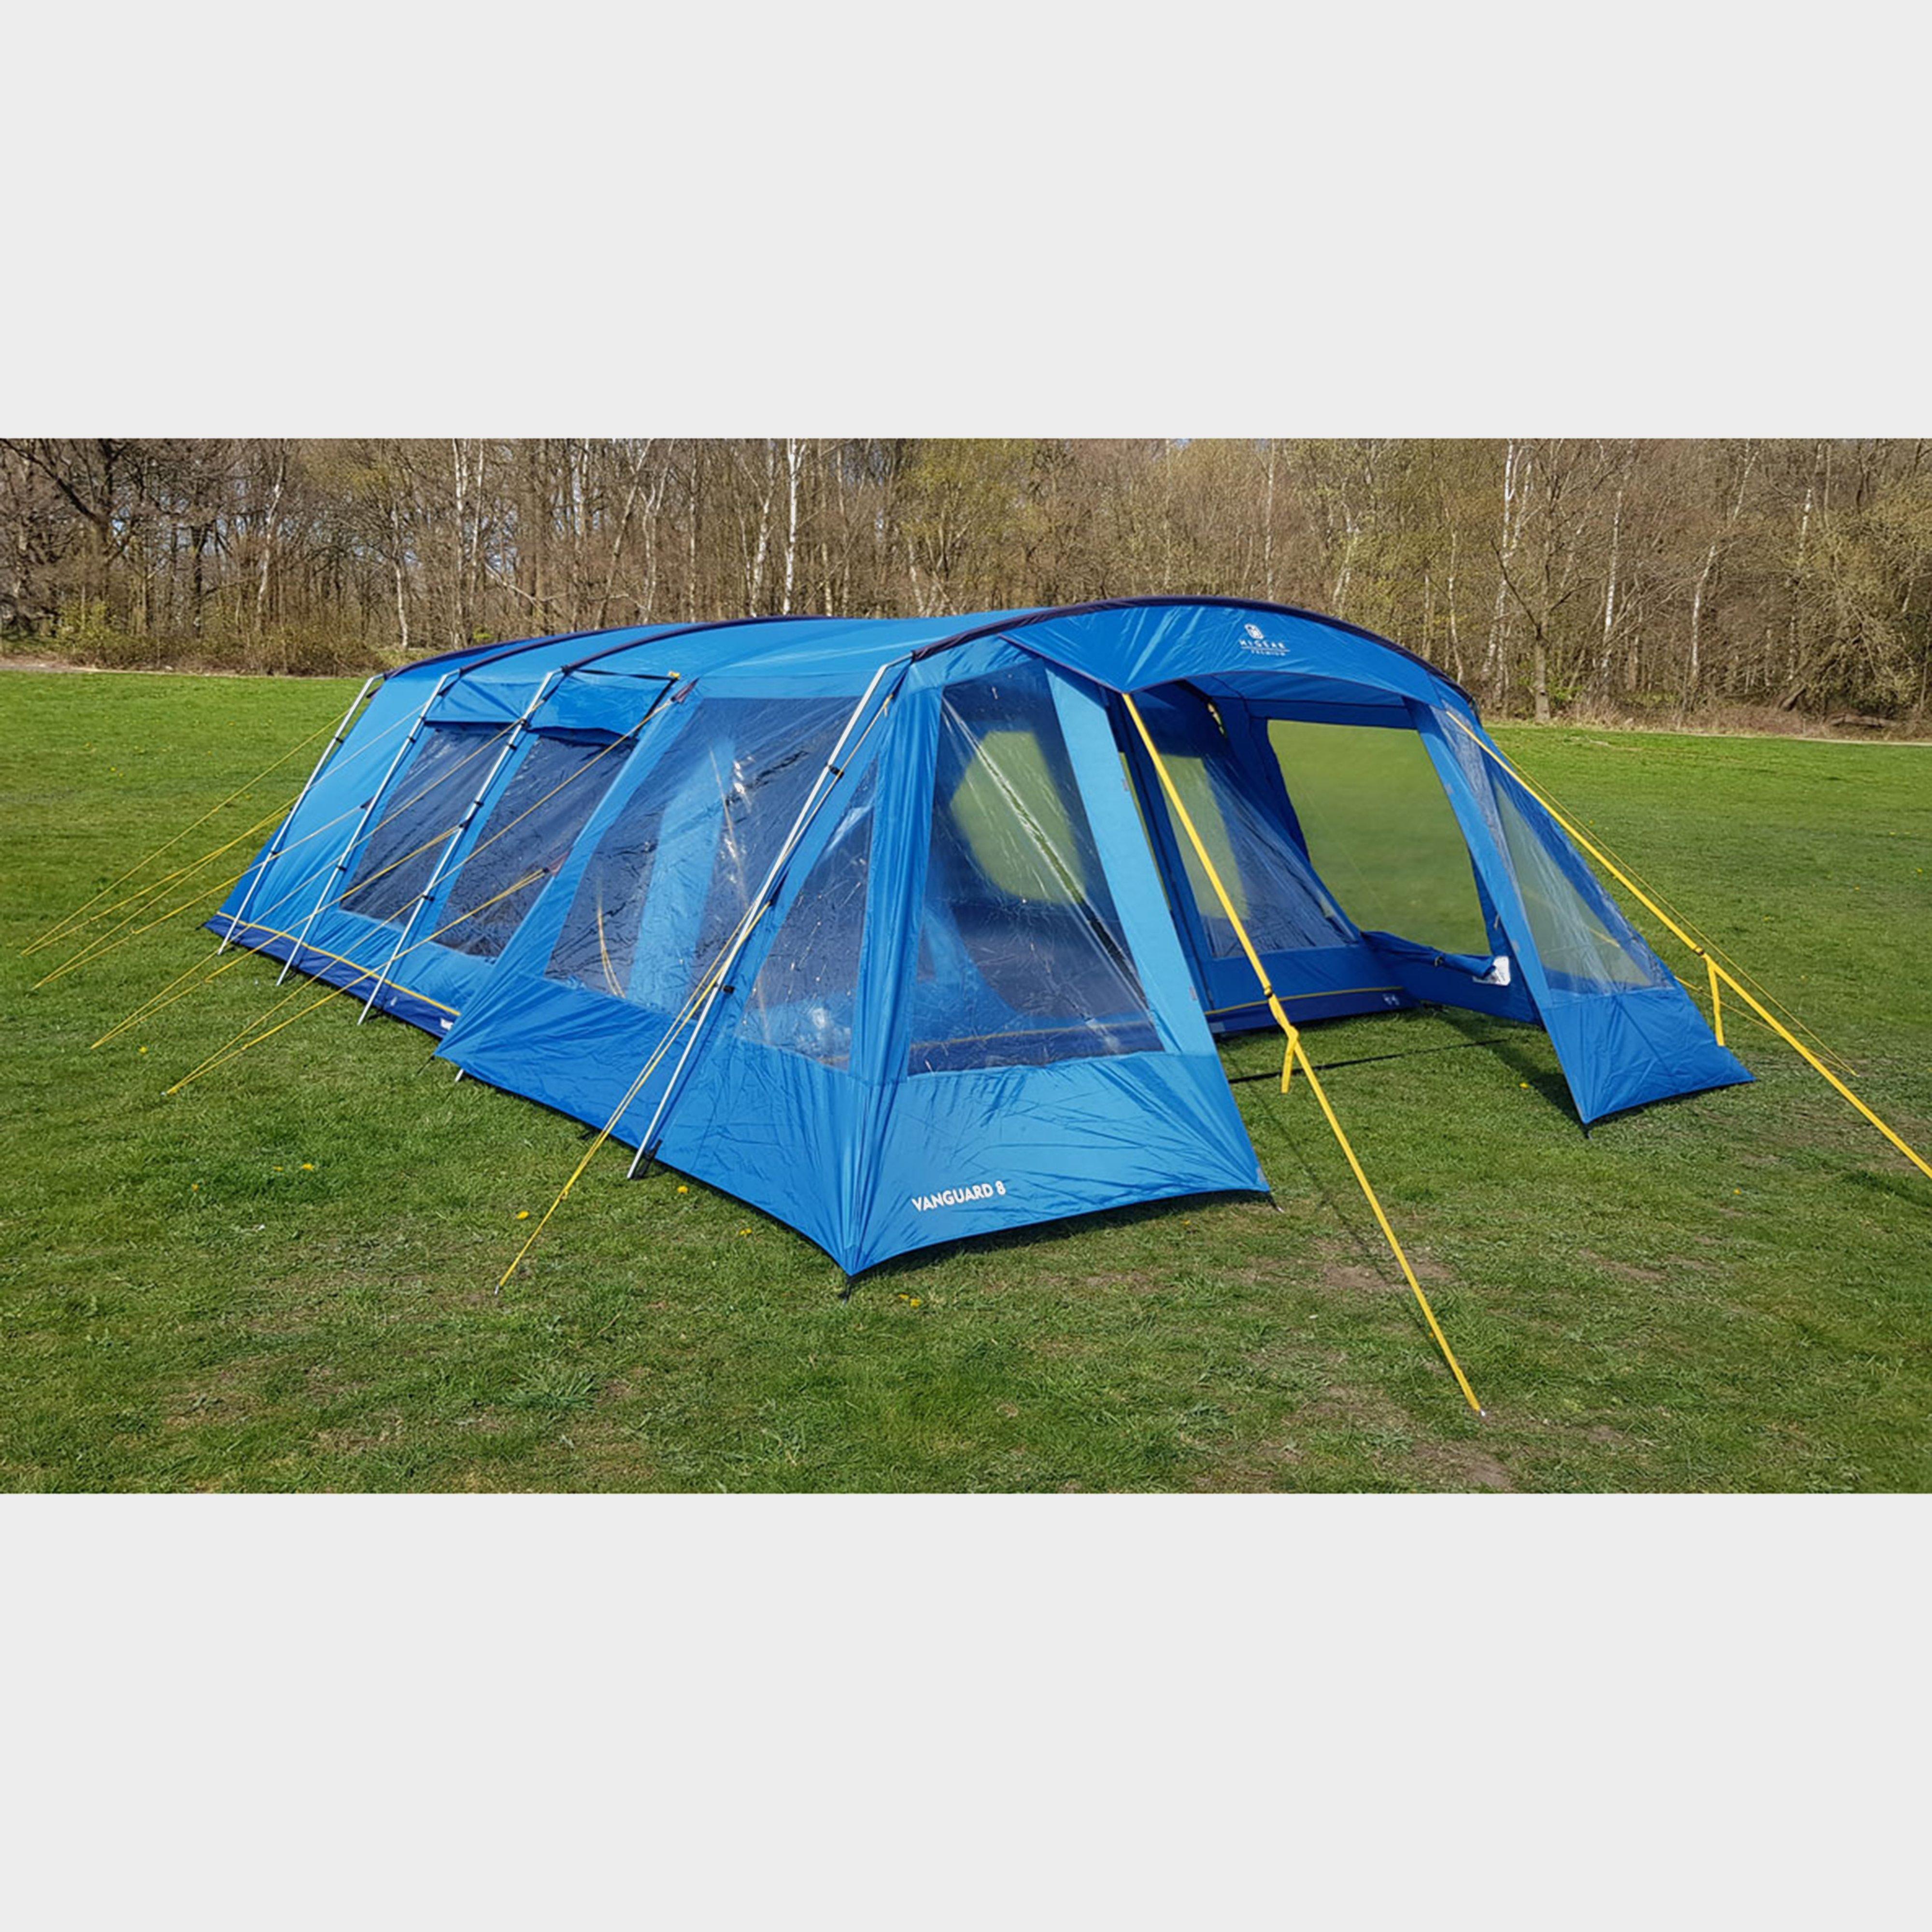  HI-GEAR Vanguard 8 Tent Porch, Black